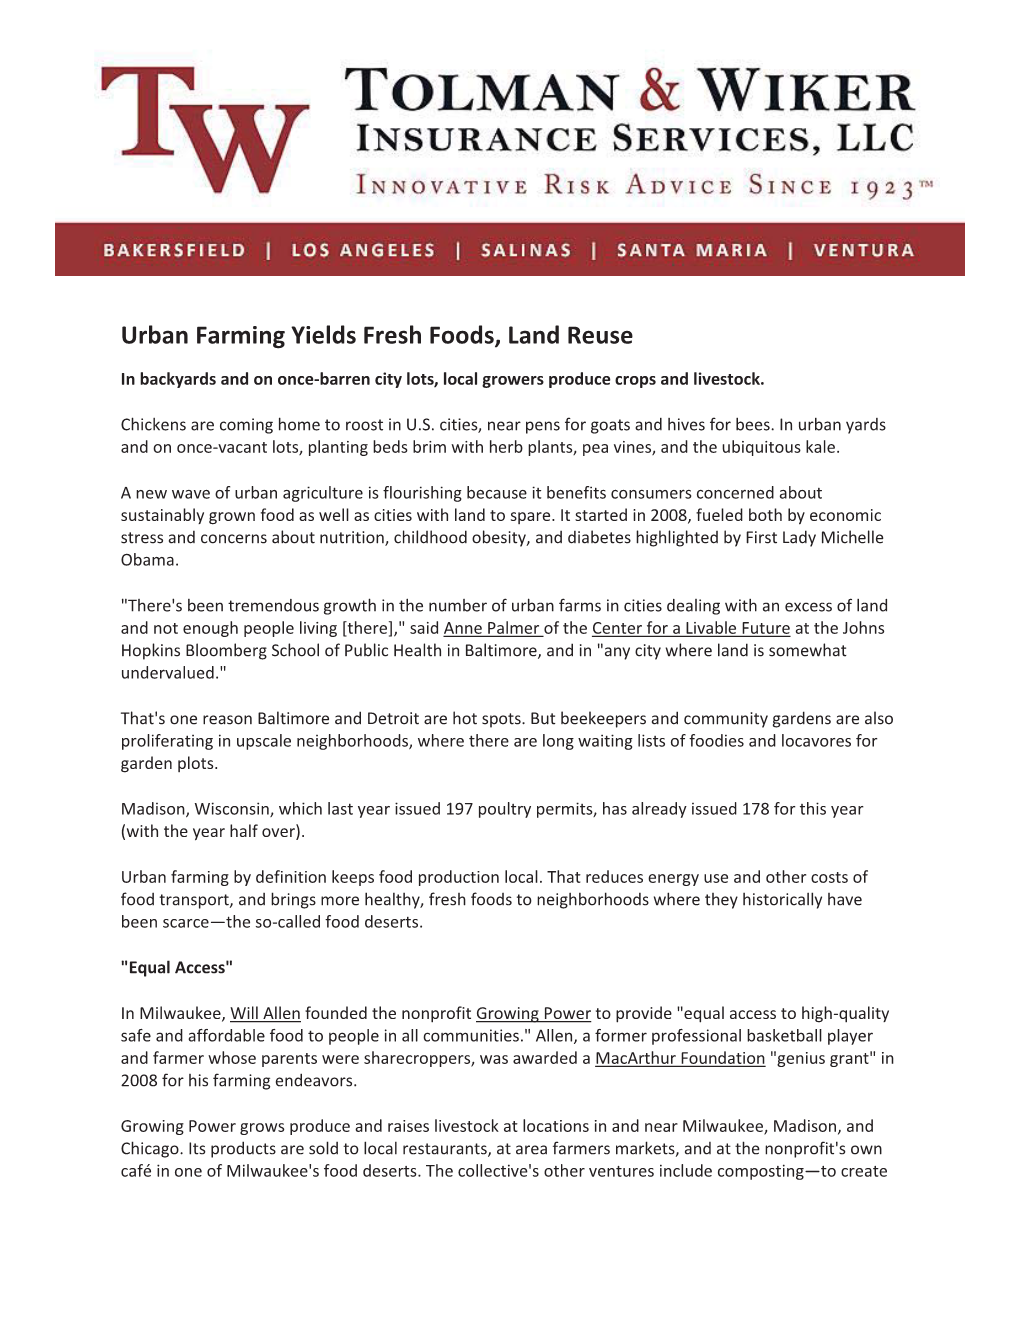 Urban Farming Yields Fresh Foods, Land Reuse